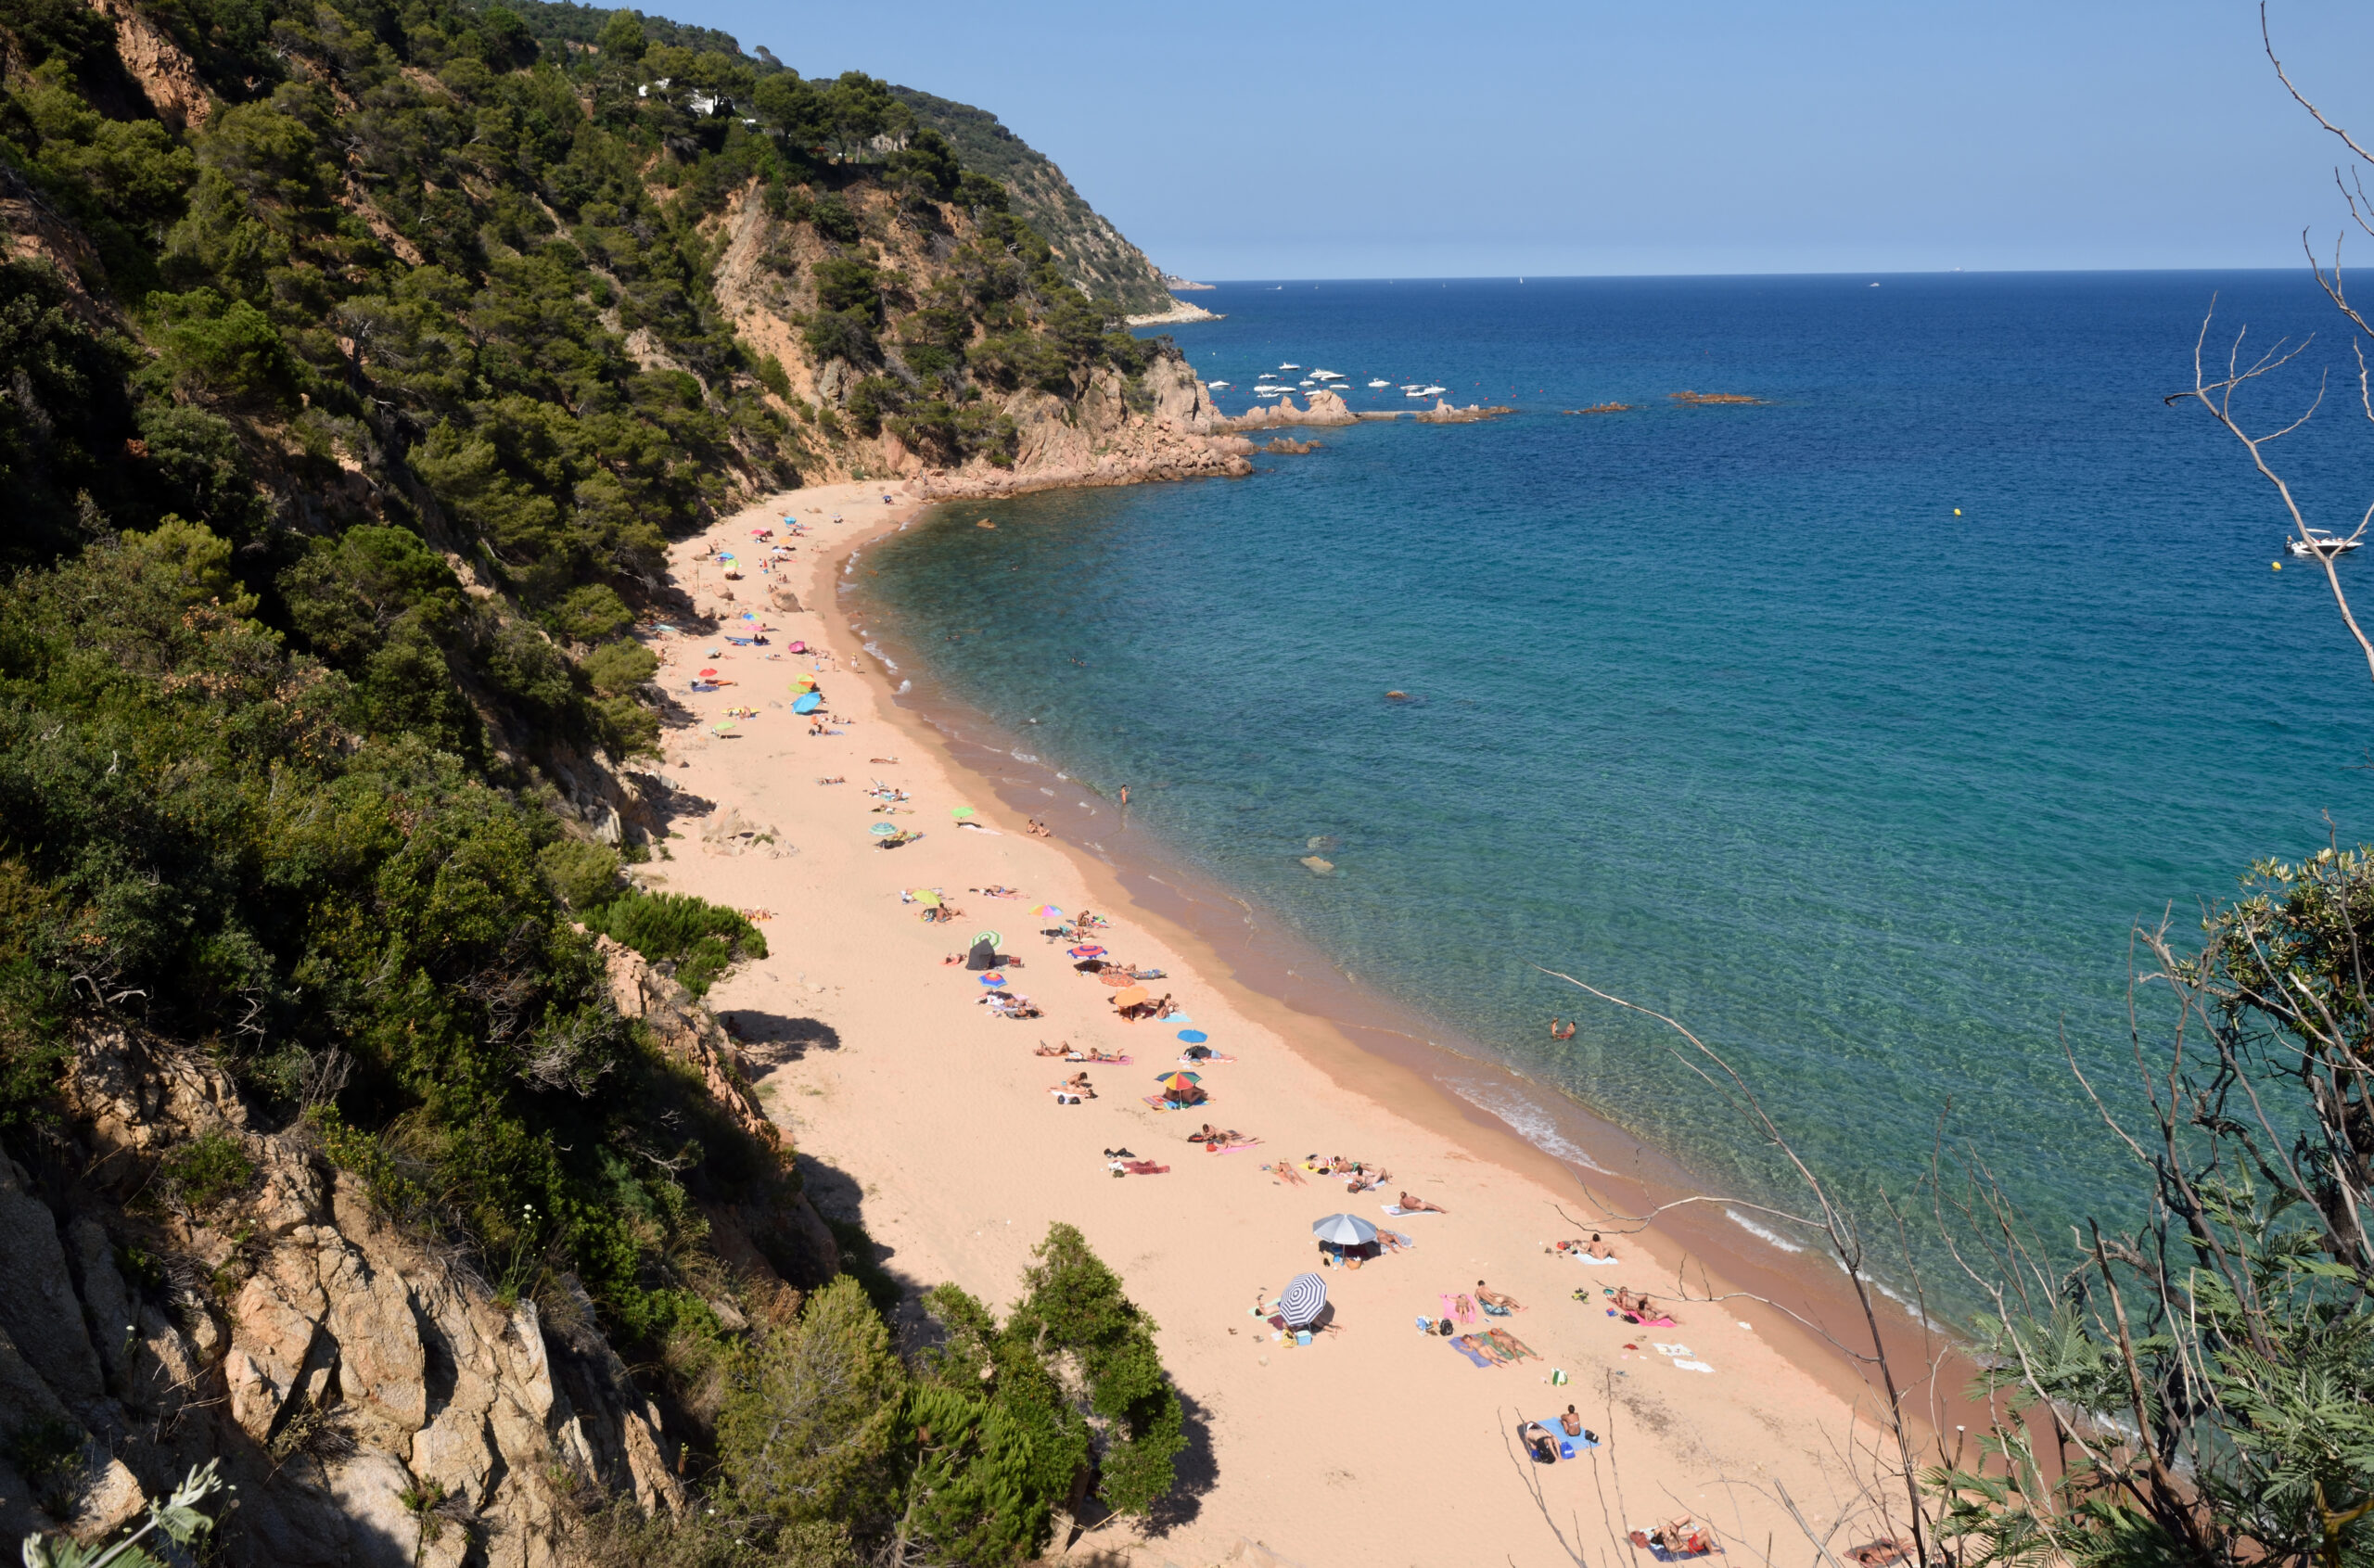 Senyor Ramon Beach - one of the best beaches in the Costa Brava, Spain